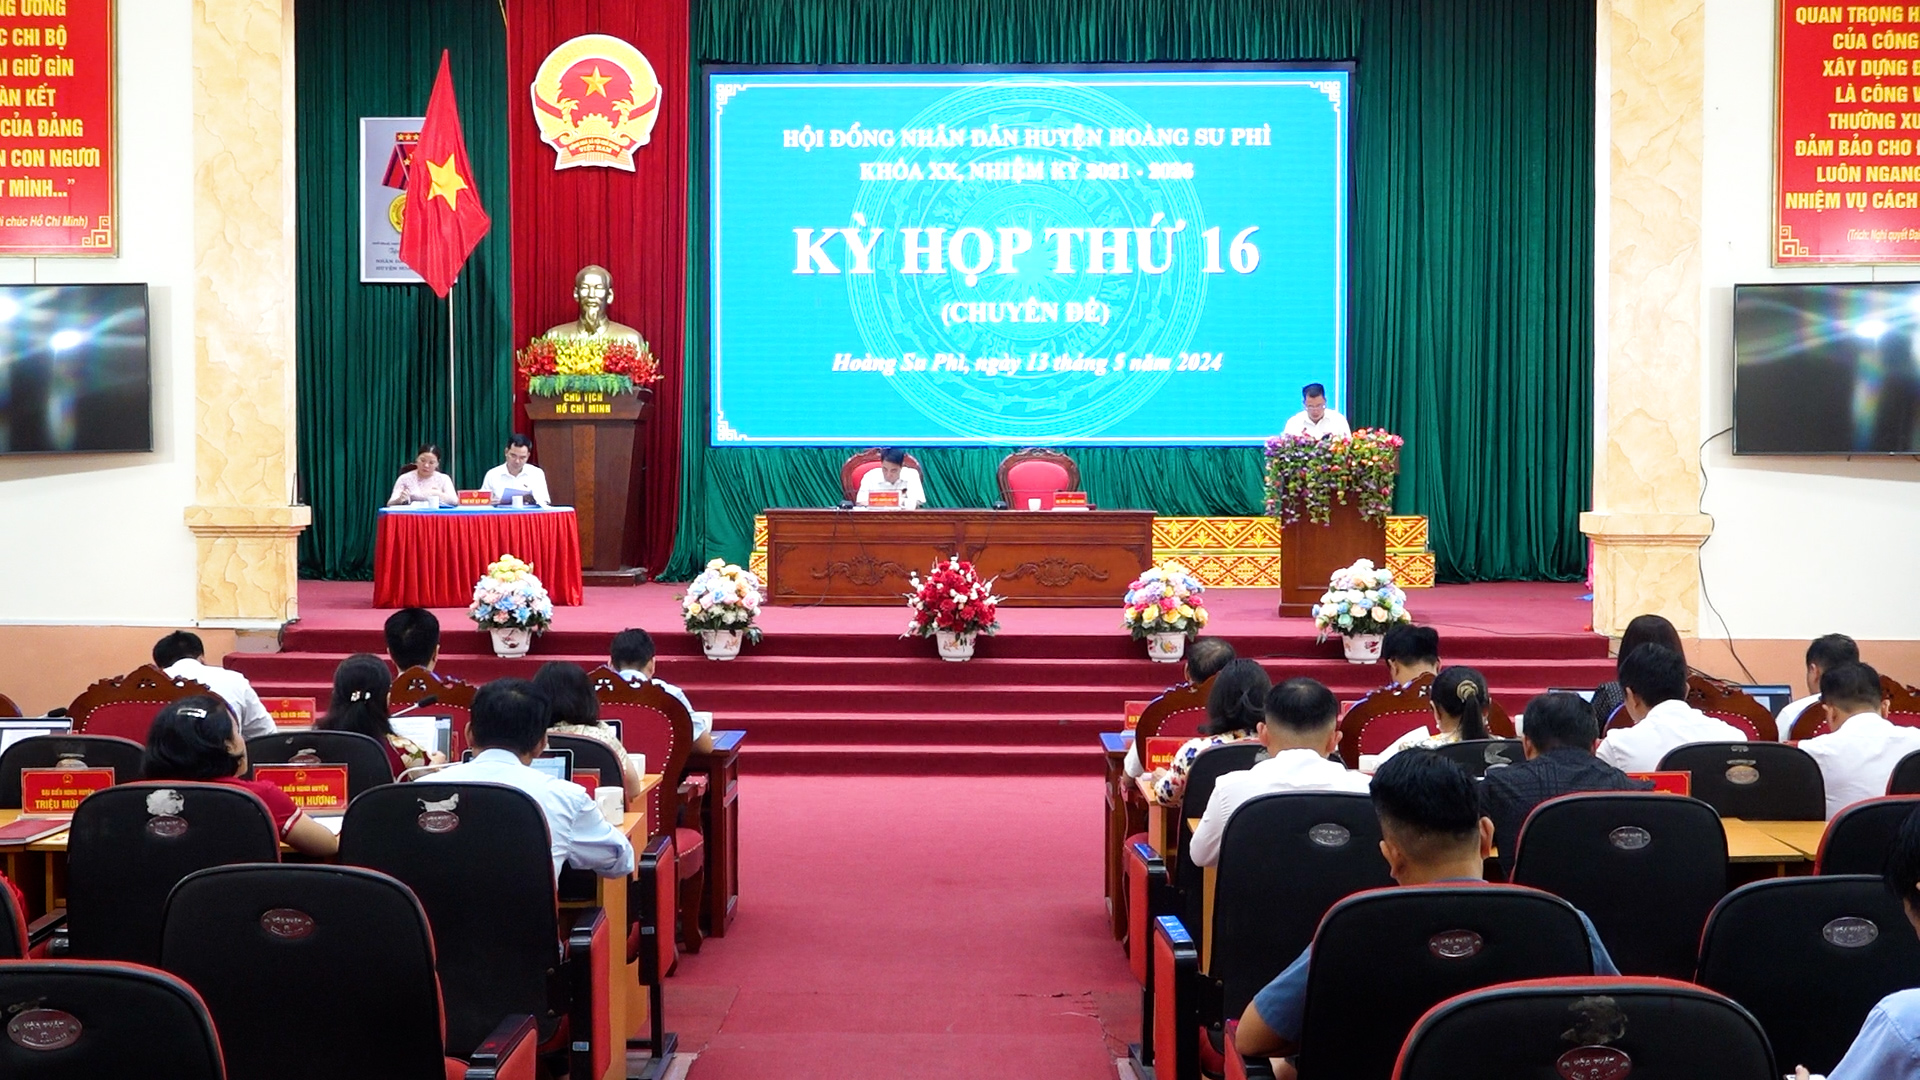 HĐND huyện Hoàng Su Phì tổ chức Kỳ họp thứ 16 (Chuyên đề)